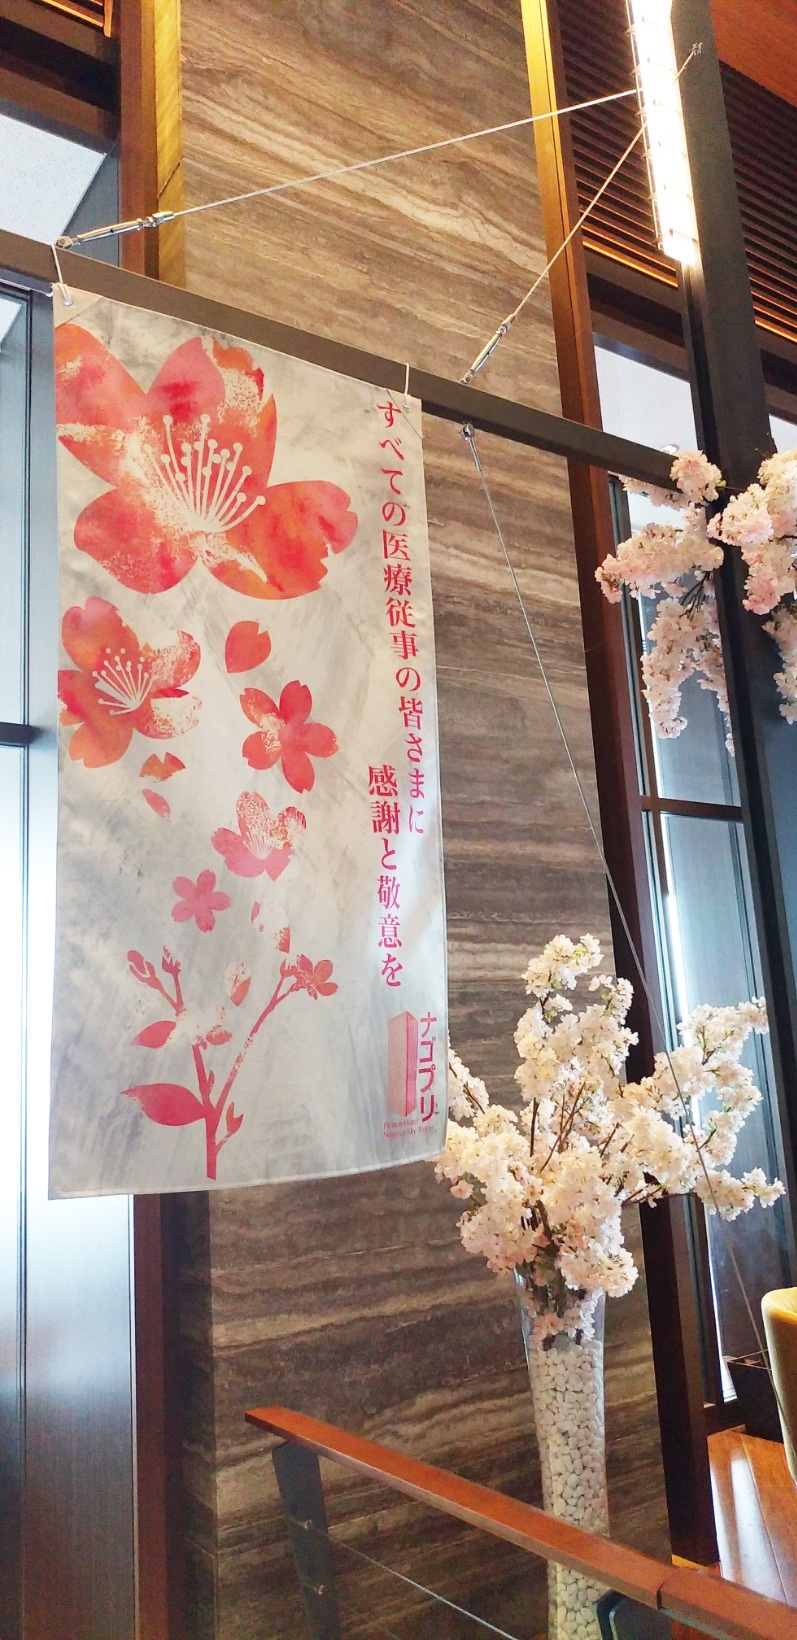 名古屋プリンスホテルスカイタワー様の2021春のロビー装飾を行いました。3